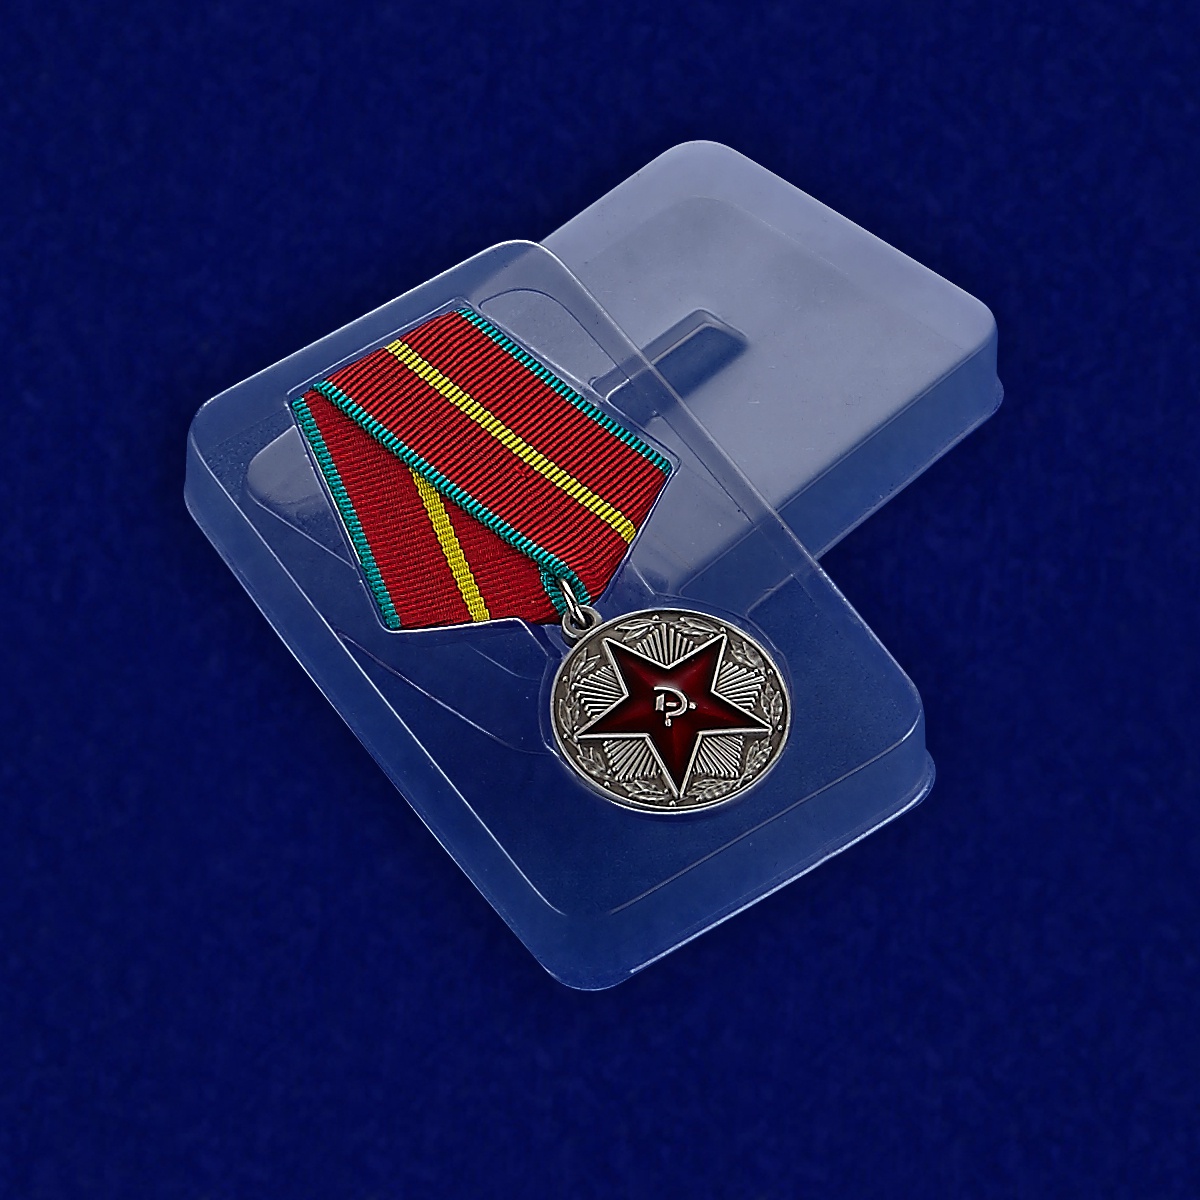 Муляж медали "За безупречную службу в Вооруженных силах СССР” 1 степени с удобной доставкой